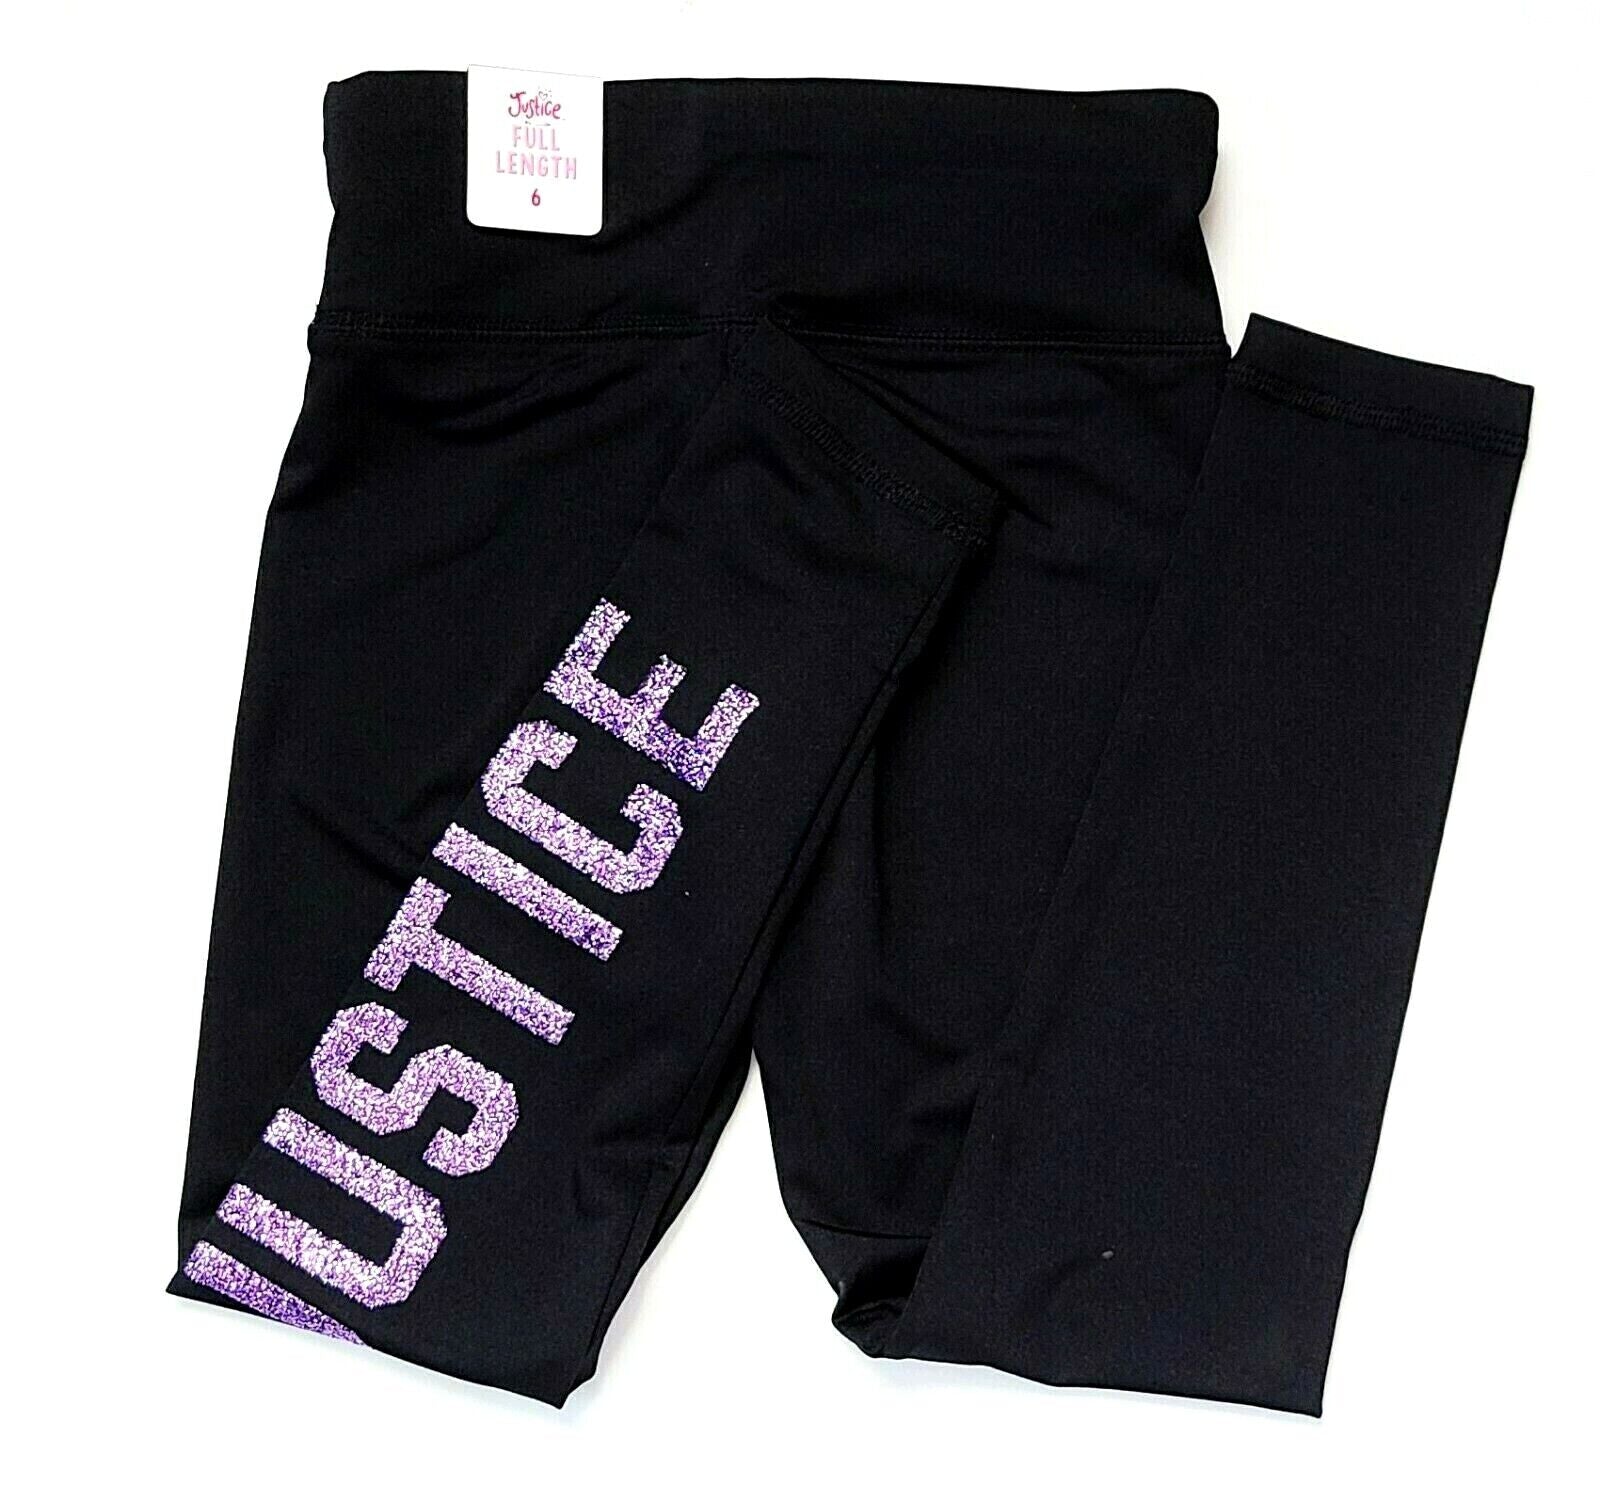 Justice Logo Full-Length Girls Leggings